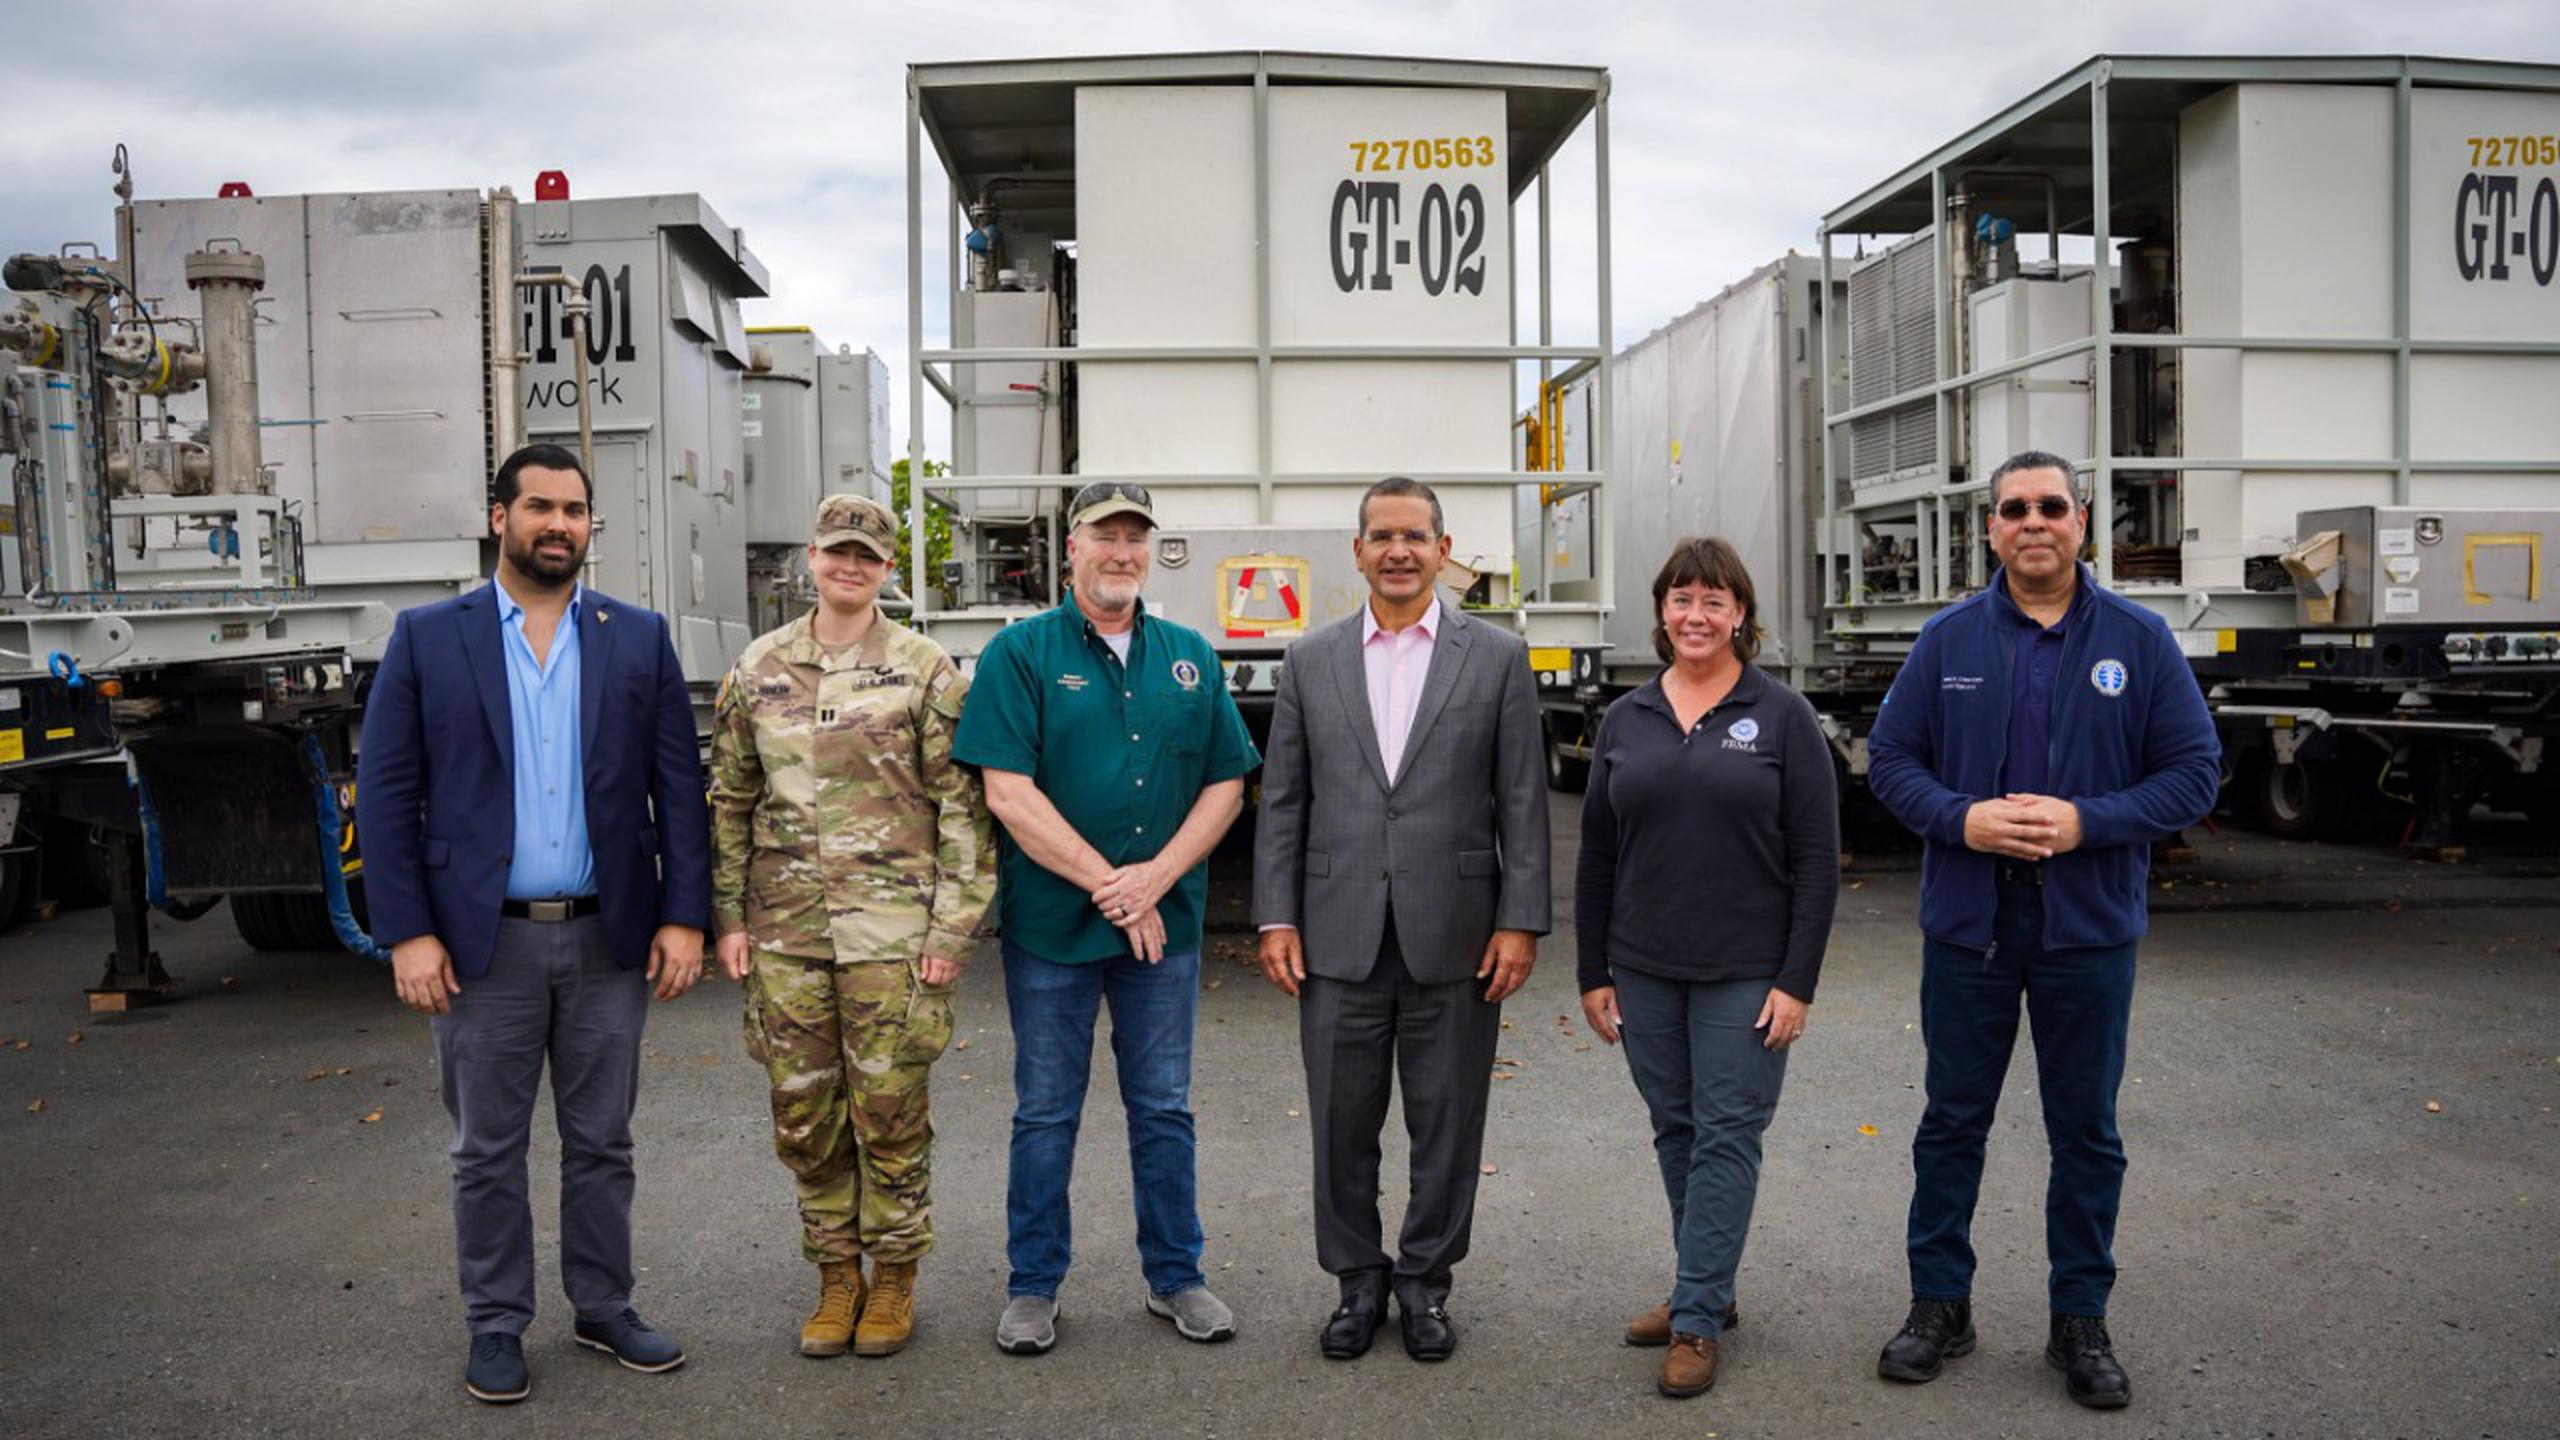 Al centro, el gobernador Pedro Pierluisi con personal de FEMA durante la presentación de los generadores eléctricos.